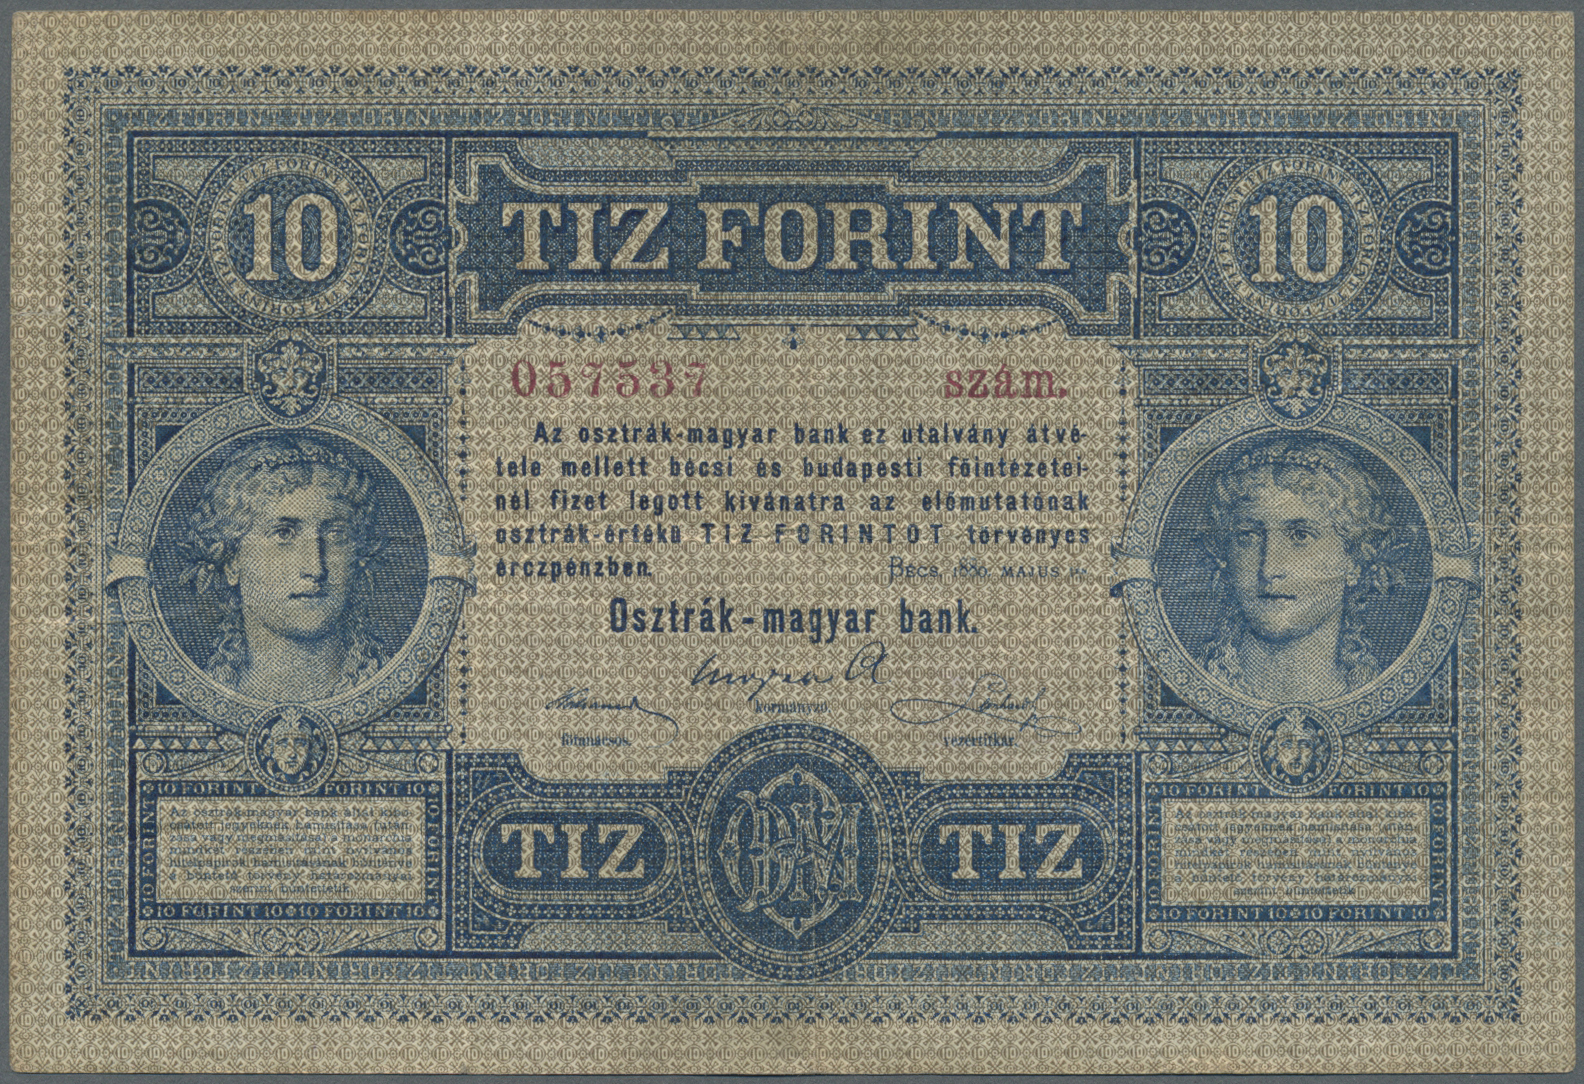 00163 Austria / Österreich: Oesterreichisch-ungarische Bank / Osztrak-magyar Bank 10 Gulden 1880, P.1, Very Nice And Att - Austria